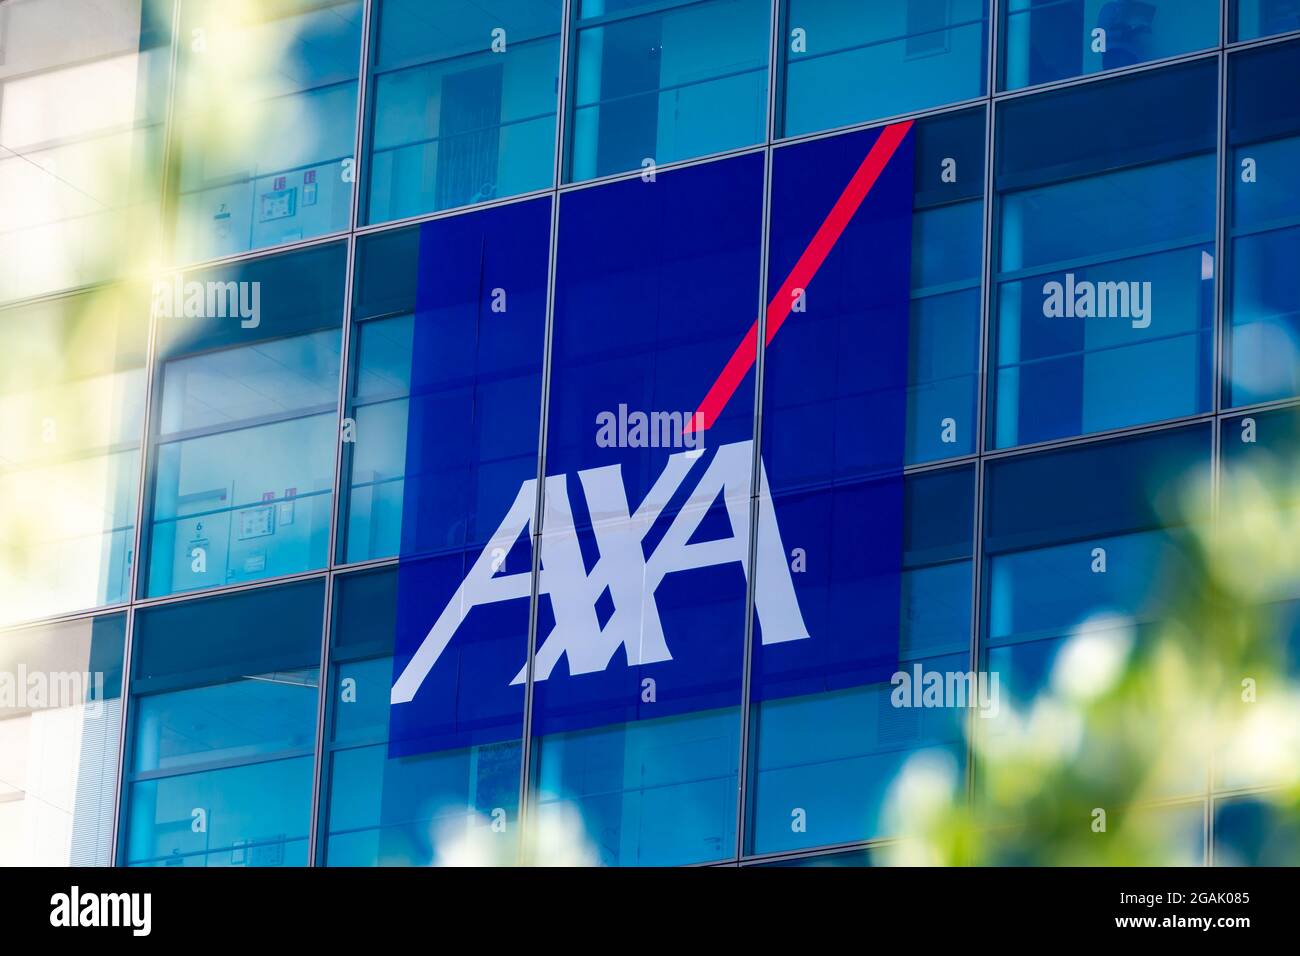 Particolare della facciata dell'edificio che ospita la sede di AXA, un gruppo internazionale francese specializzato in assicurazioni e gestione patrimoniale Foto Stock